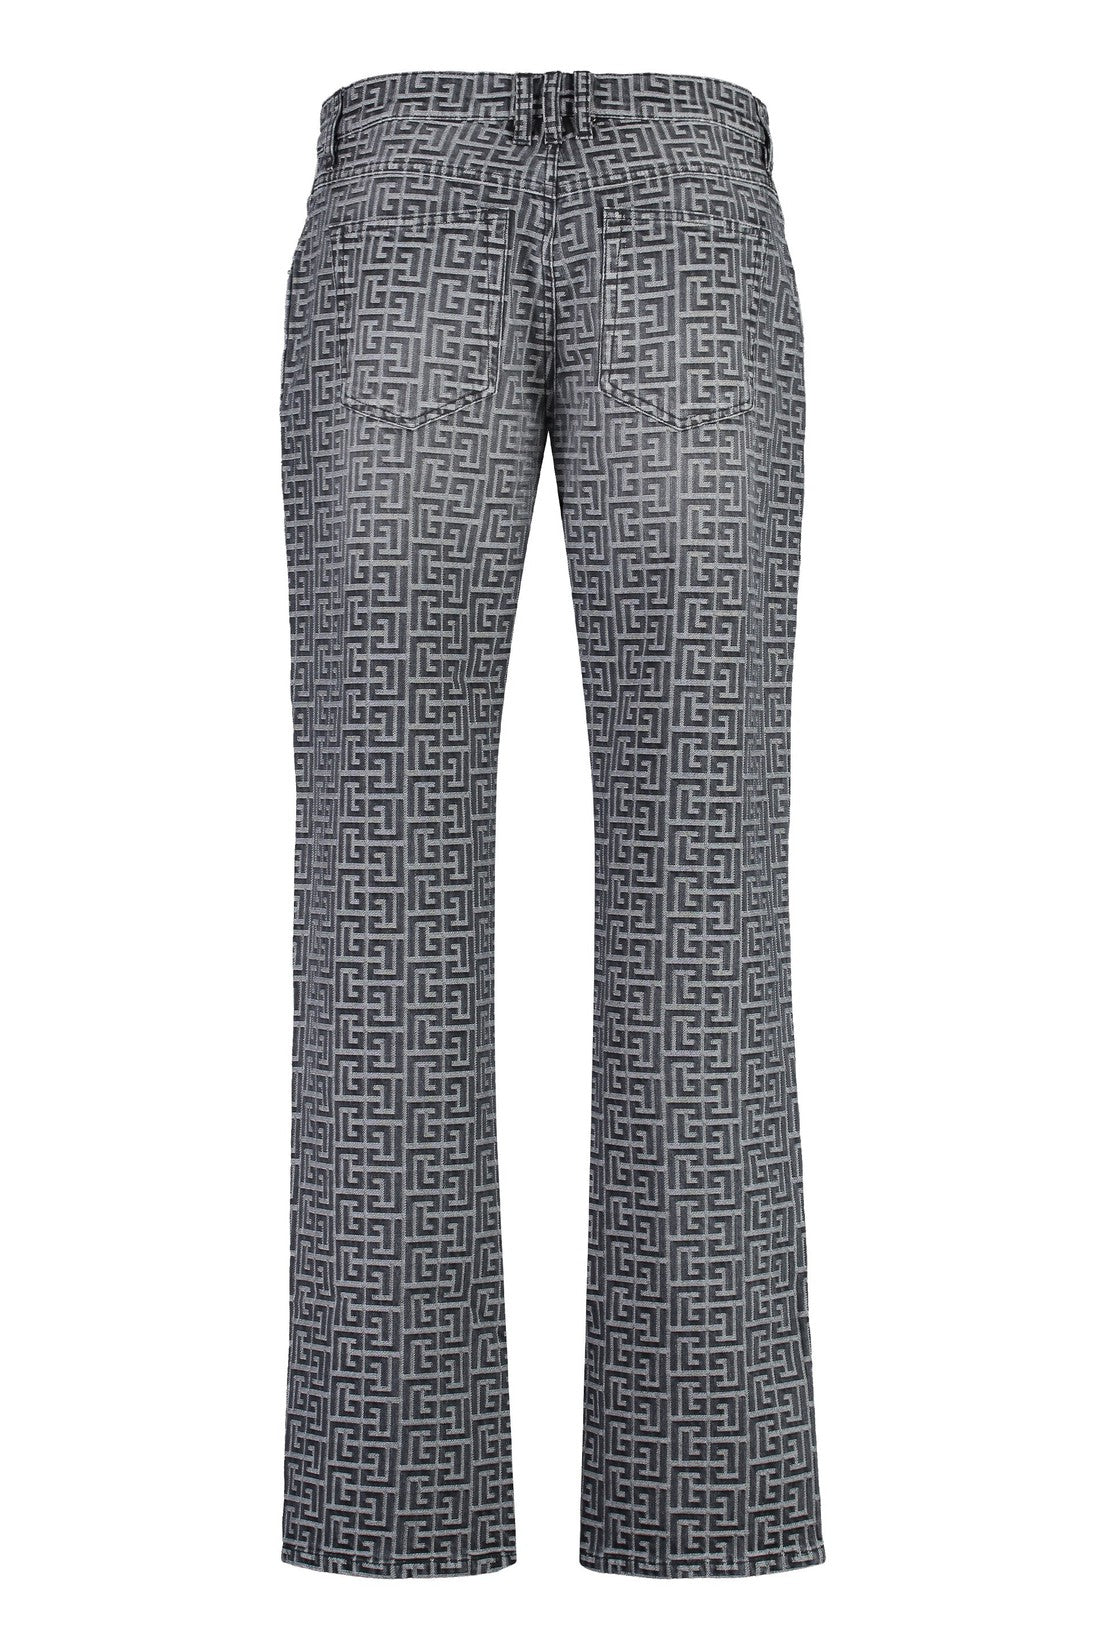 Balmain-OUTLET-SALE-5-pocket straight-leg jeans-ARCHIVIST